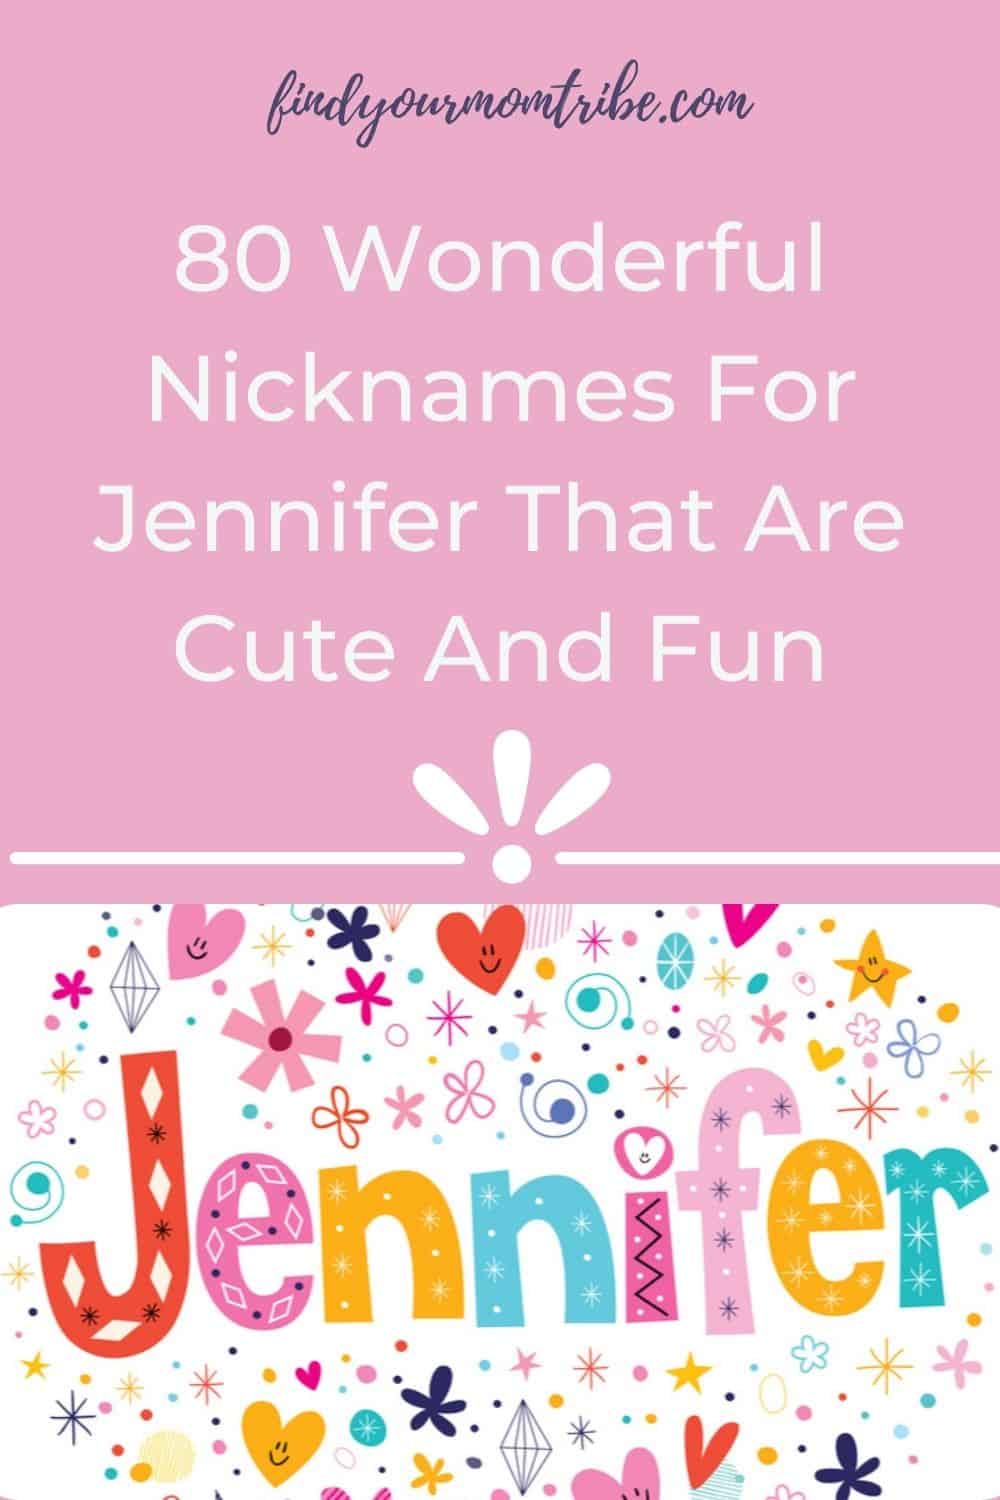 Pinterest nicknames for jennifer